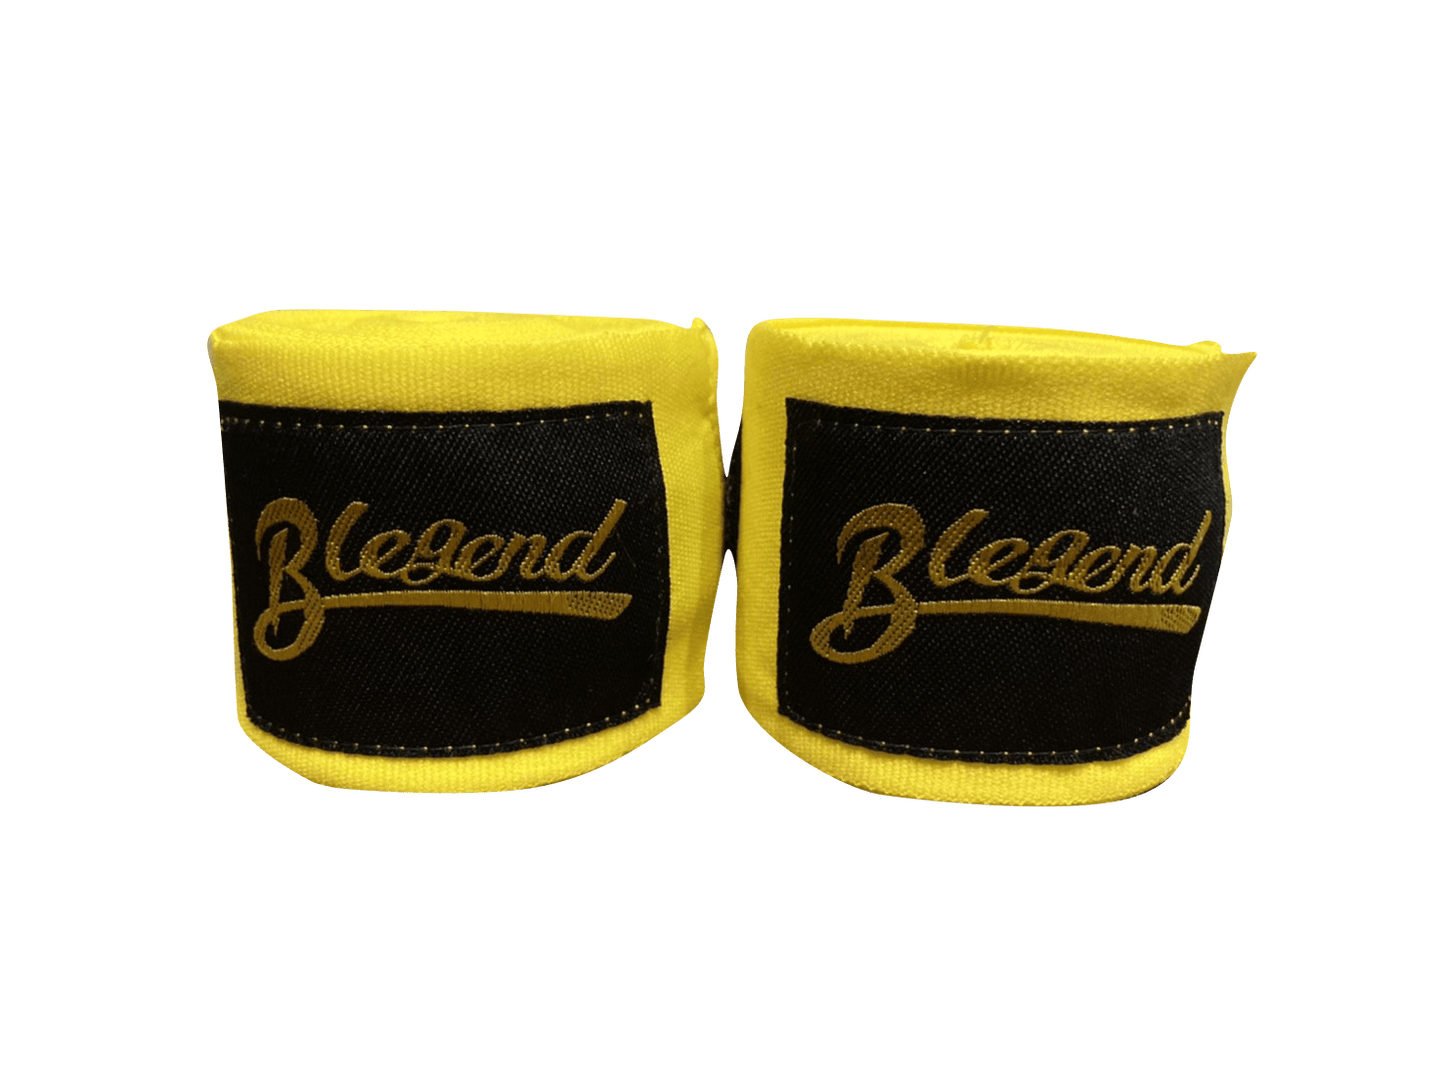 BLEGEND Handwraps Yellow Blegend